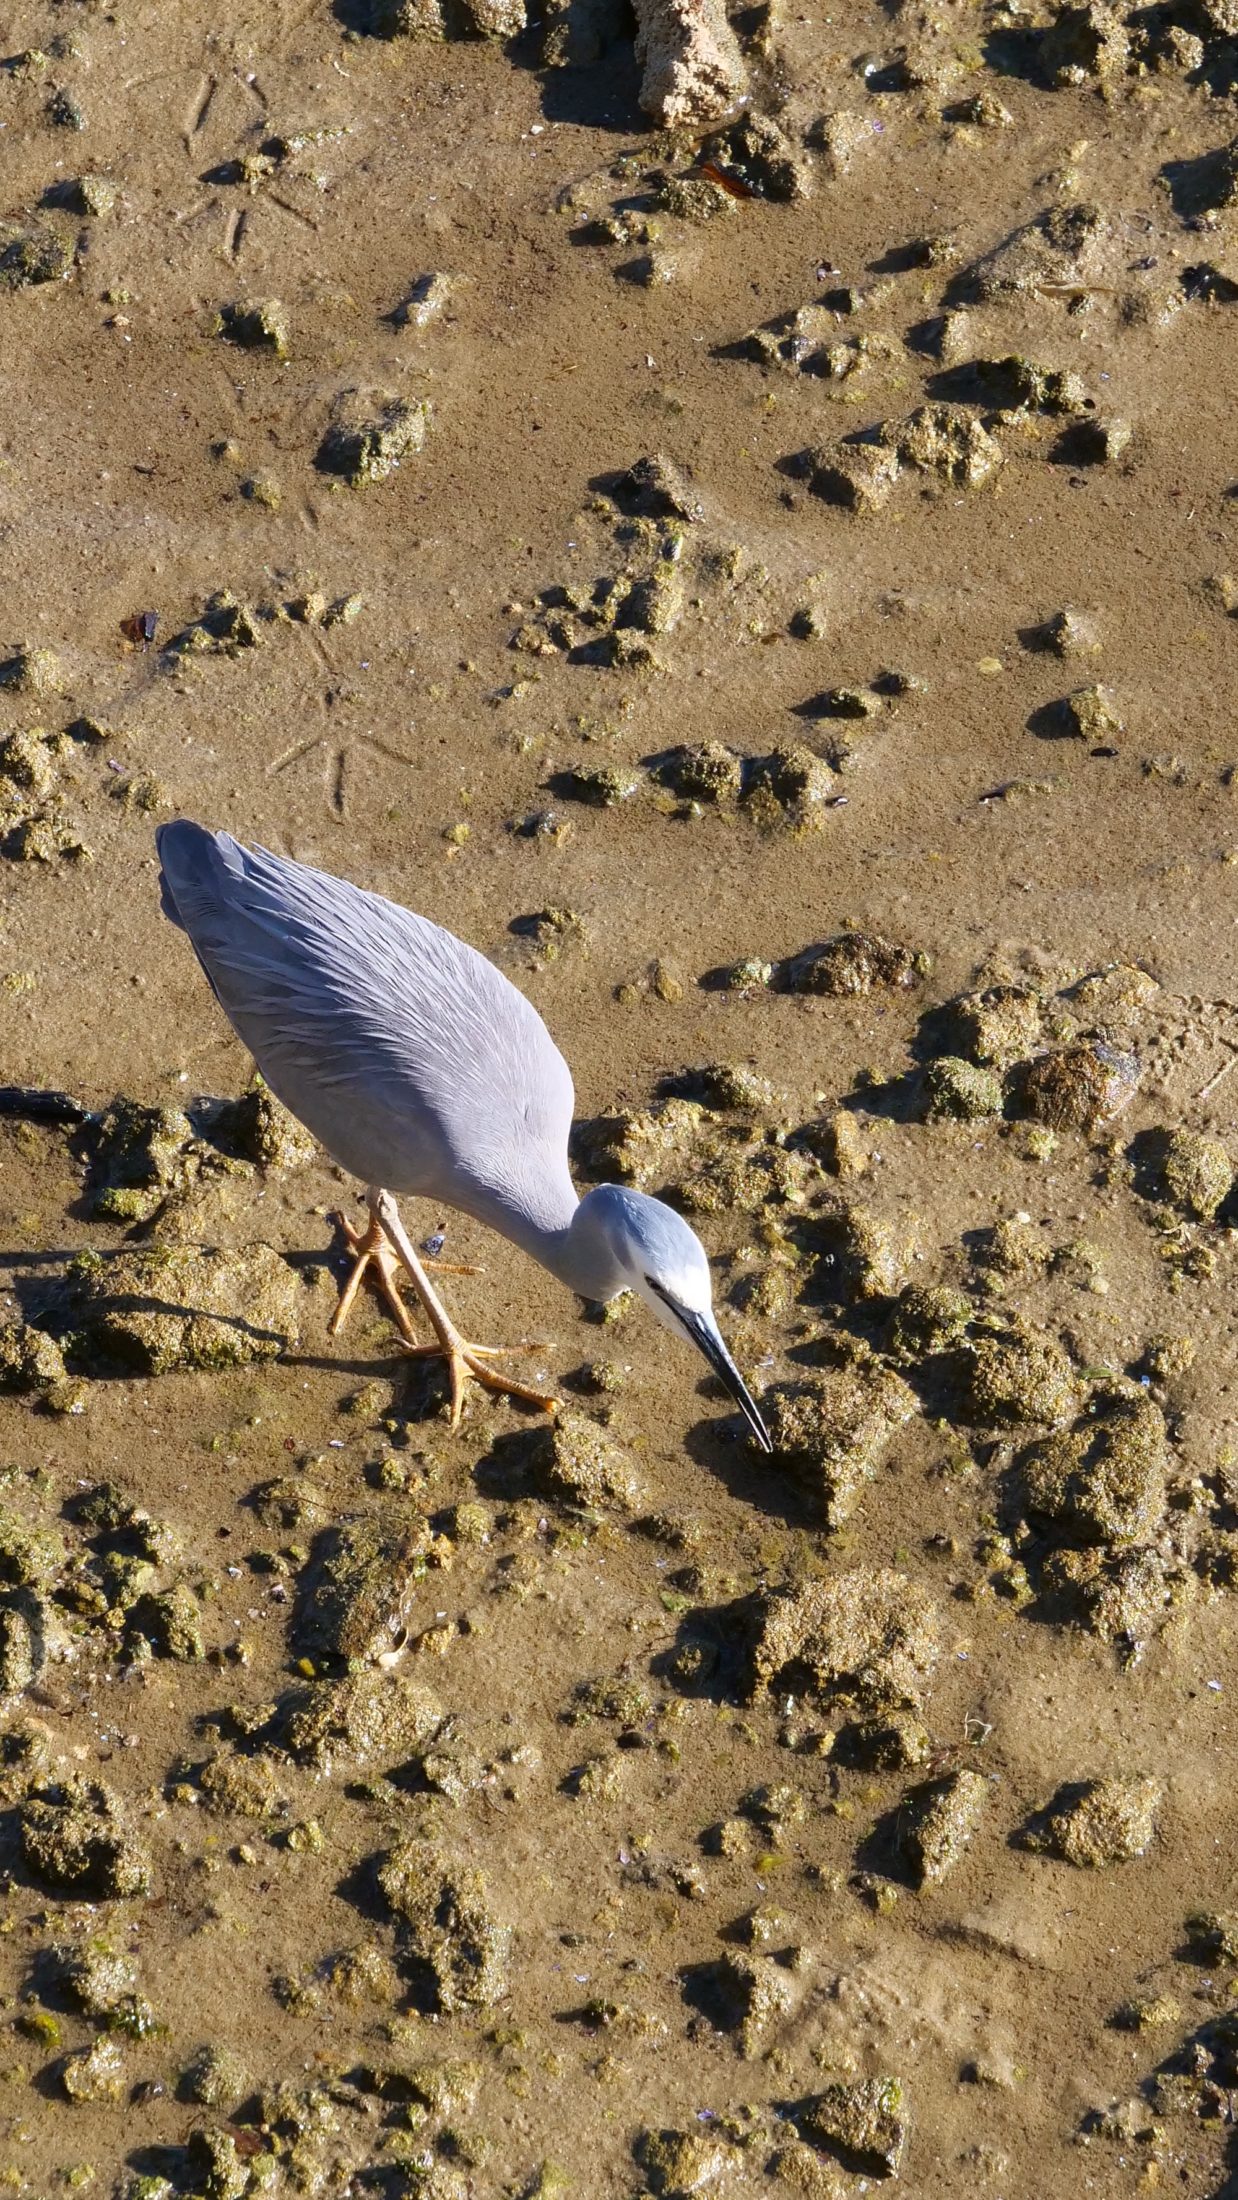 White-faced heron, Applecross